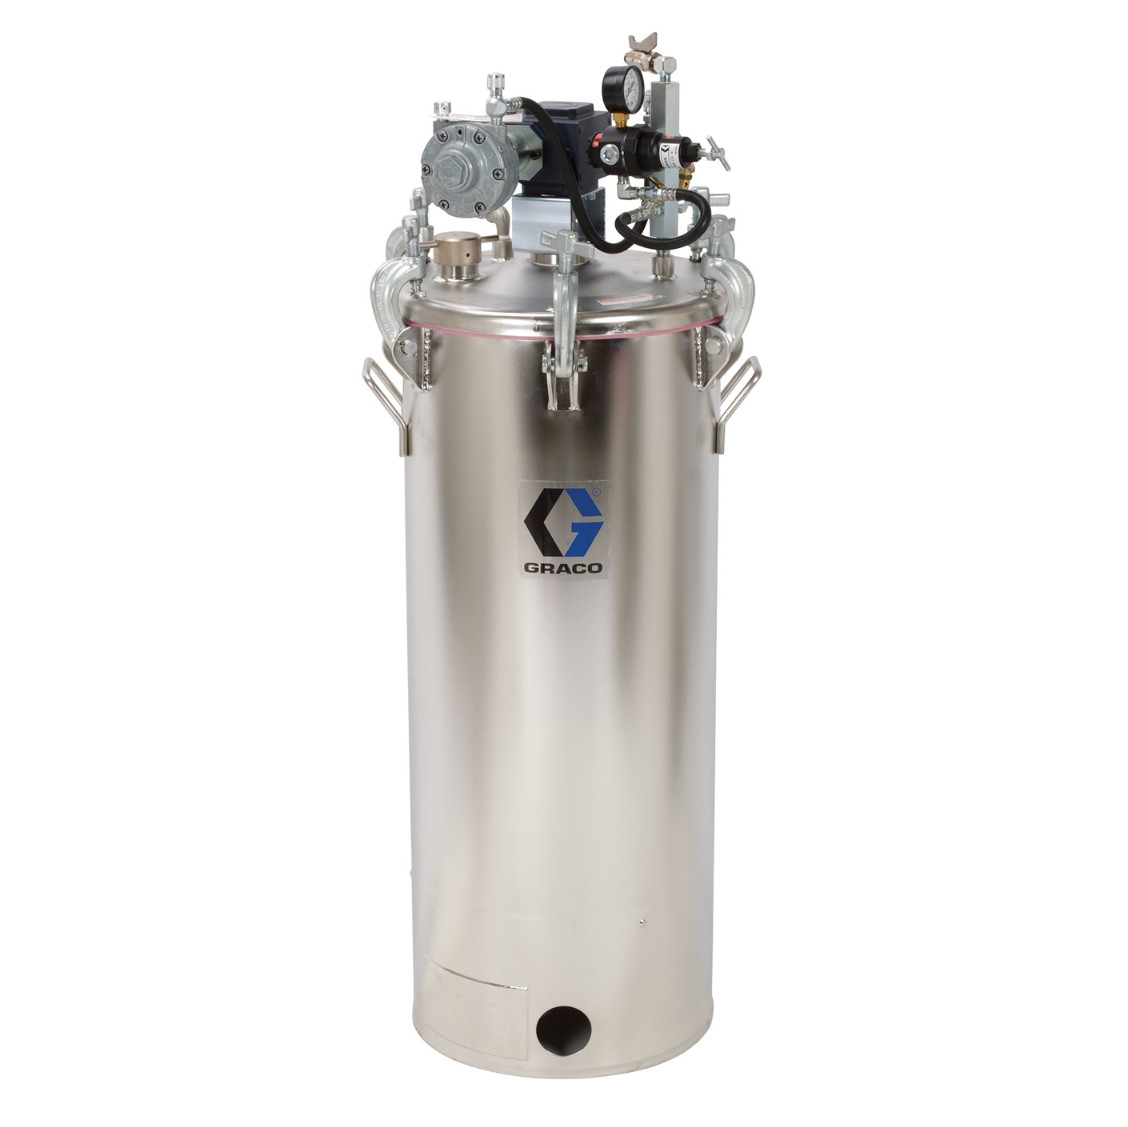 15 Gallon Pressure Tank, Agitated, Low Pressure